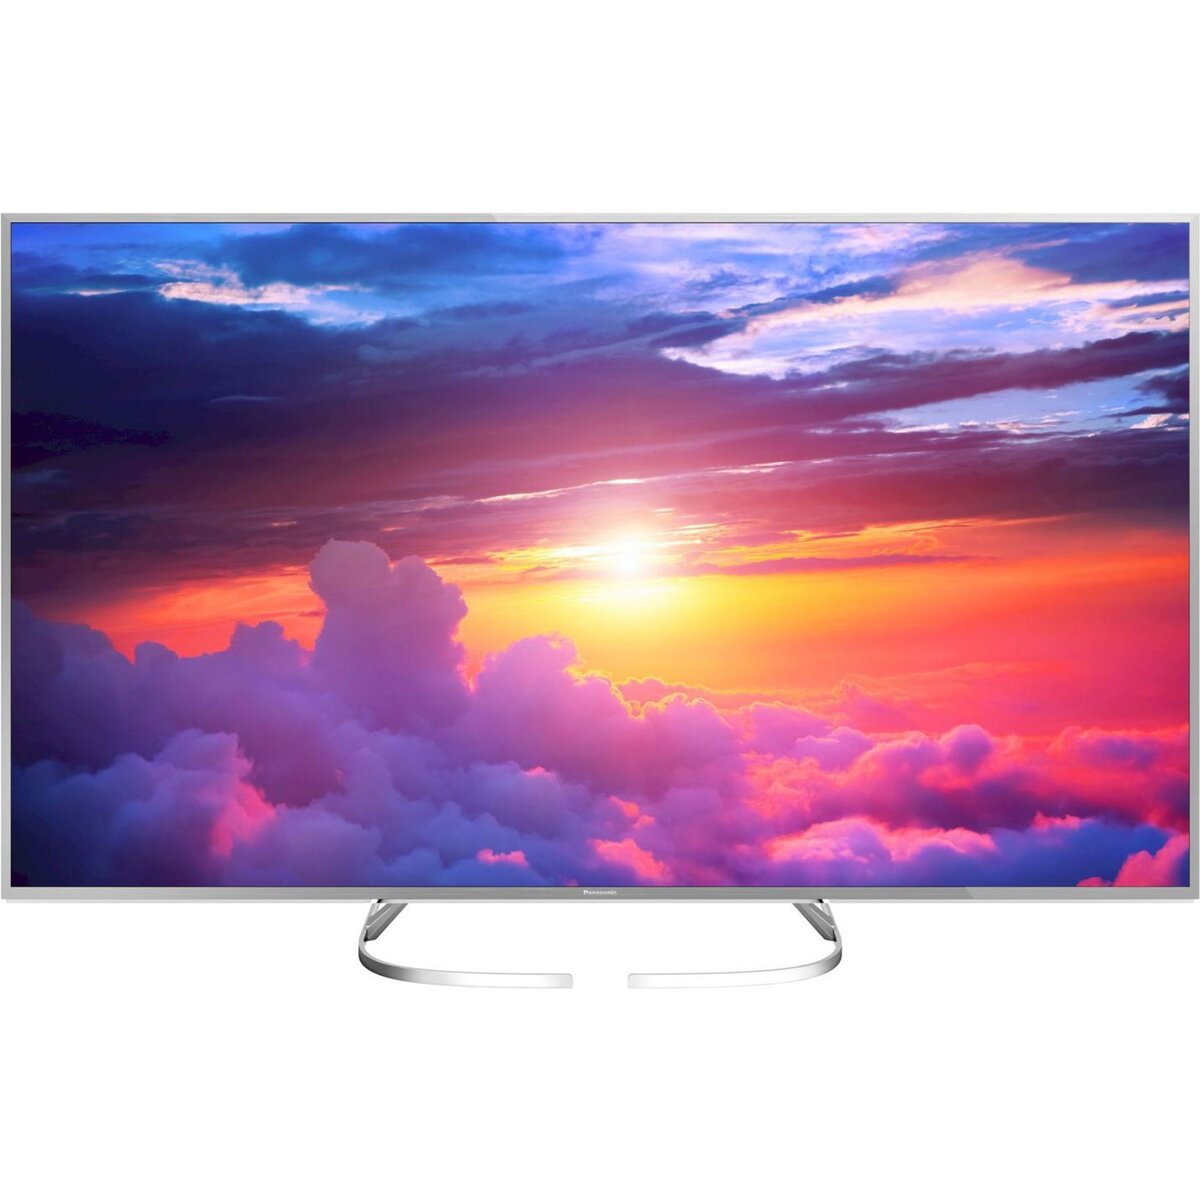 PANASONIC TX-65EX700E TV LED 4K UHD 164 cm HDR Smart TV